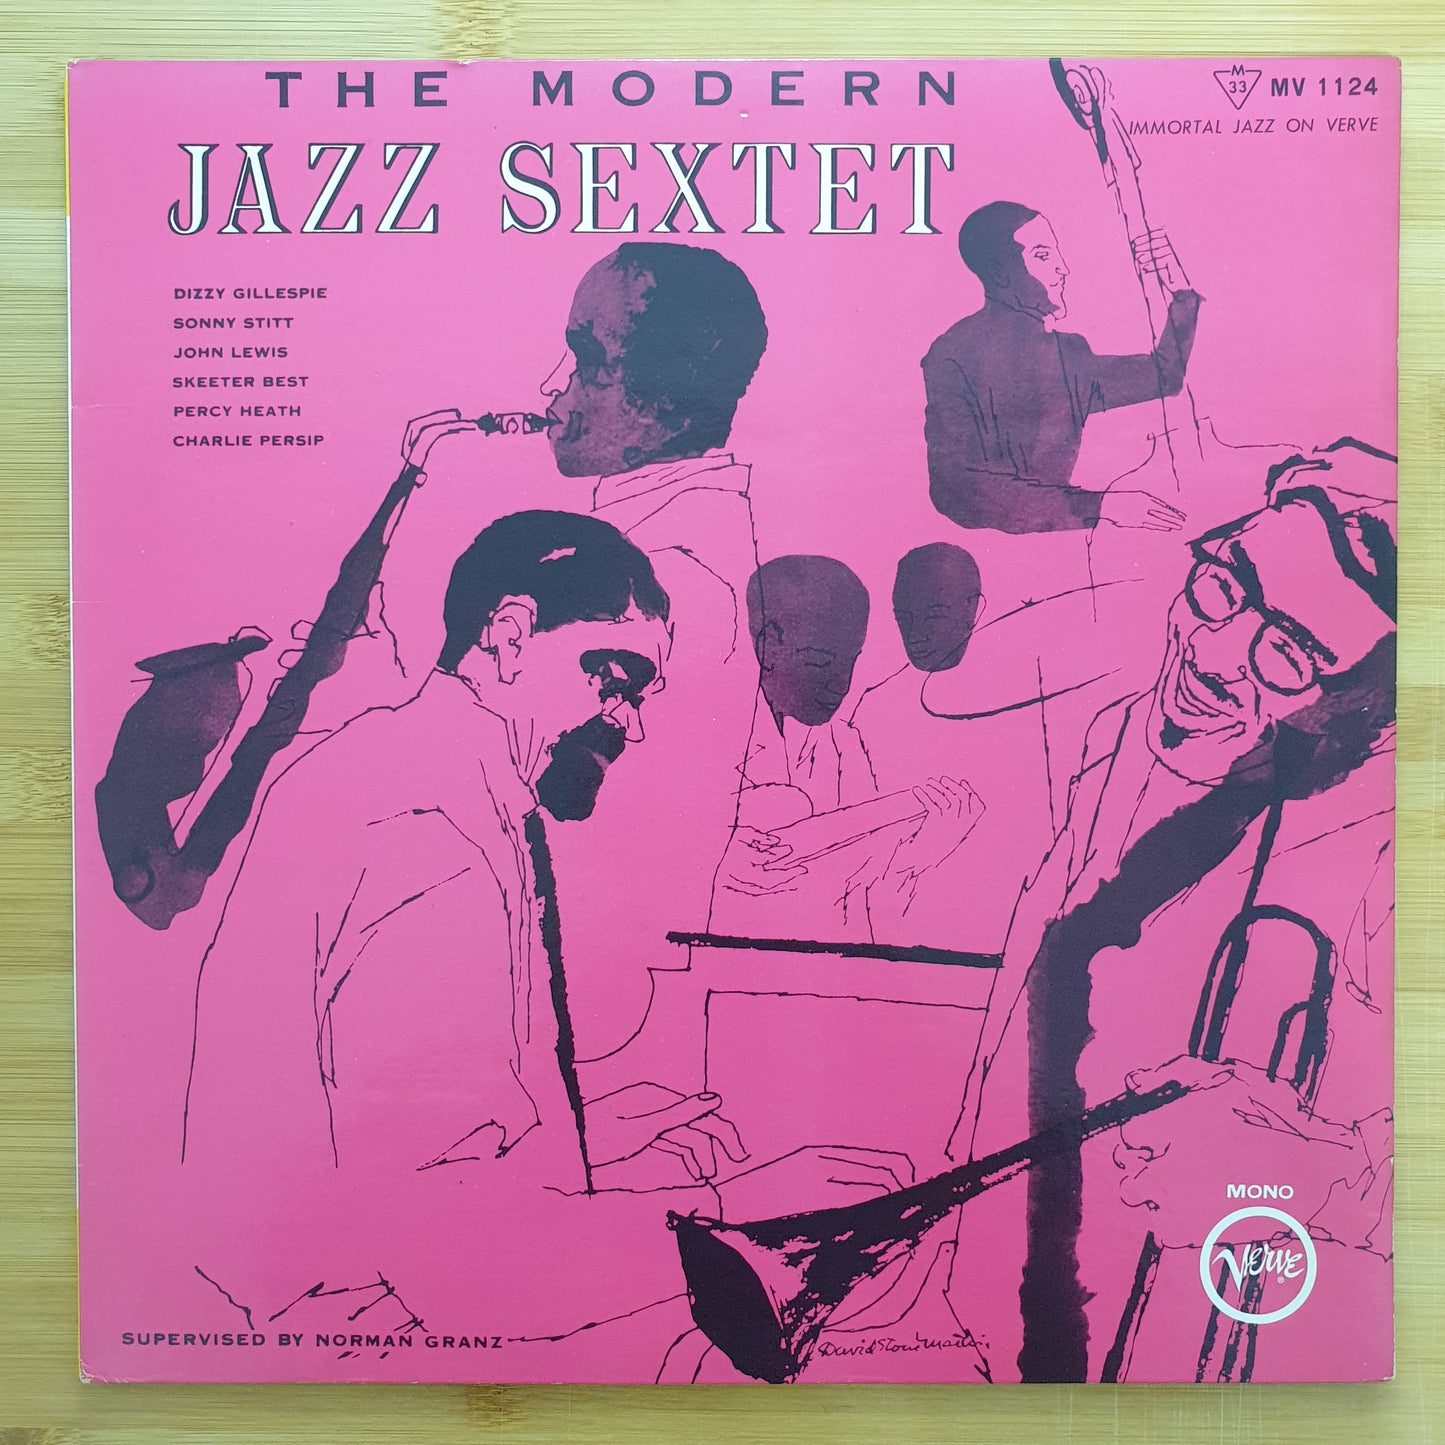 The Modern Jazz Sextet Featuring Dizzy Gillespie, Sonny Stitt, John Lewis , Skeeter Best, Percy Heath, Charlie Persip - The Modern Jazz Sextet